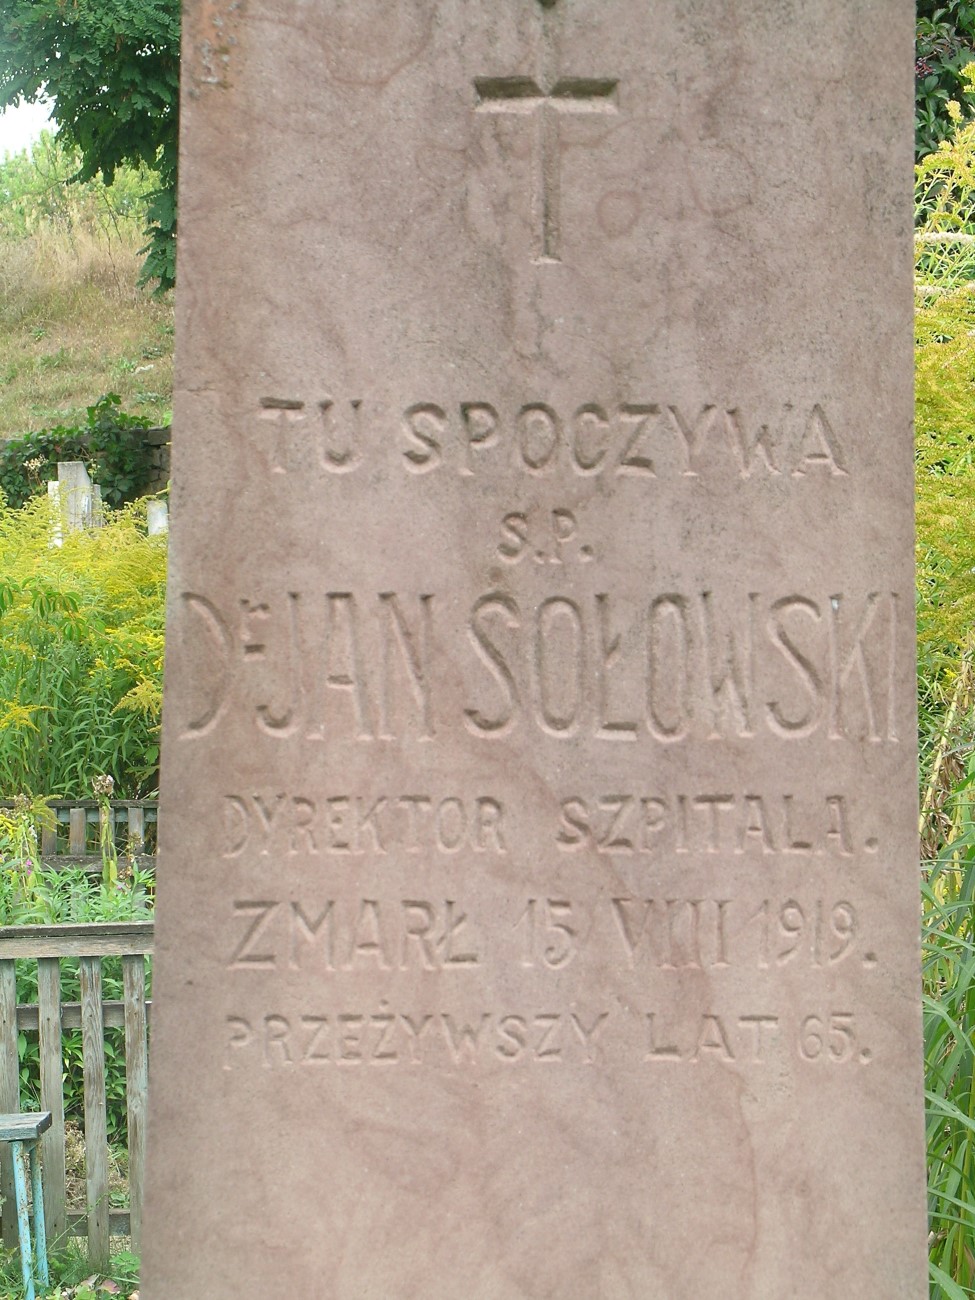 Tombstone of Jan Sołowski, Zaleszczyki cemetery, as of 2019.